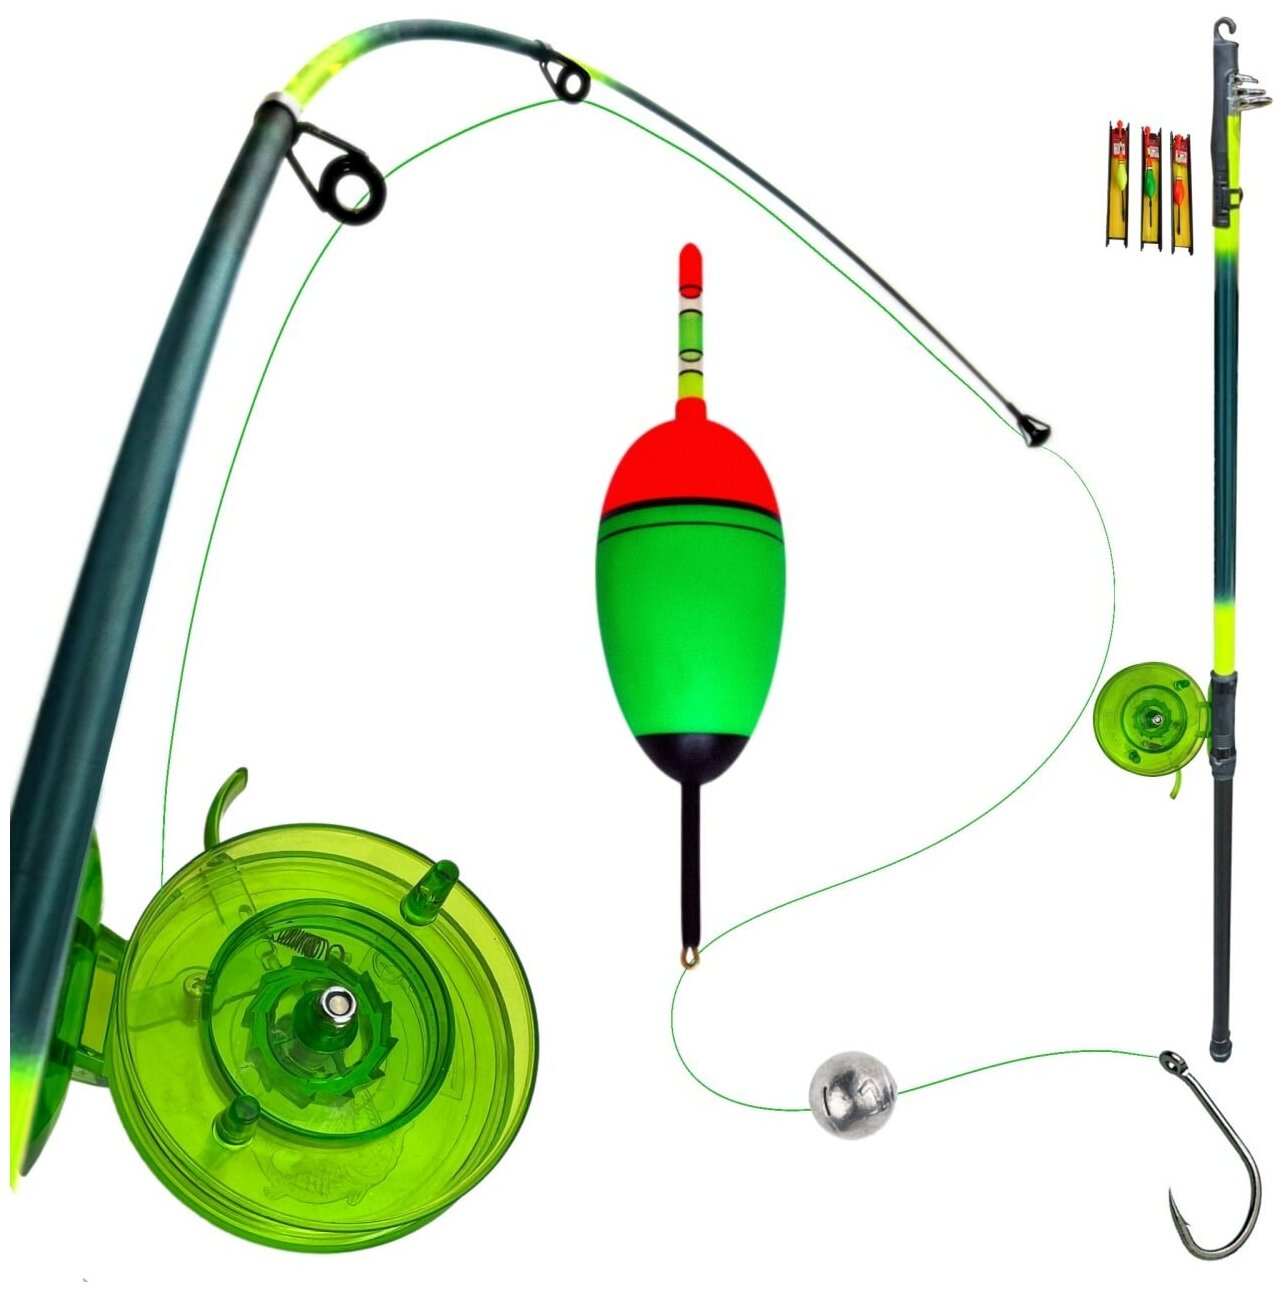 Удочка для ловли на поплавок с набором оснаски, телескопическая, зеленая, 3 м. Набор удочка и оснастка.